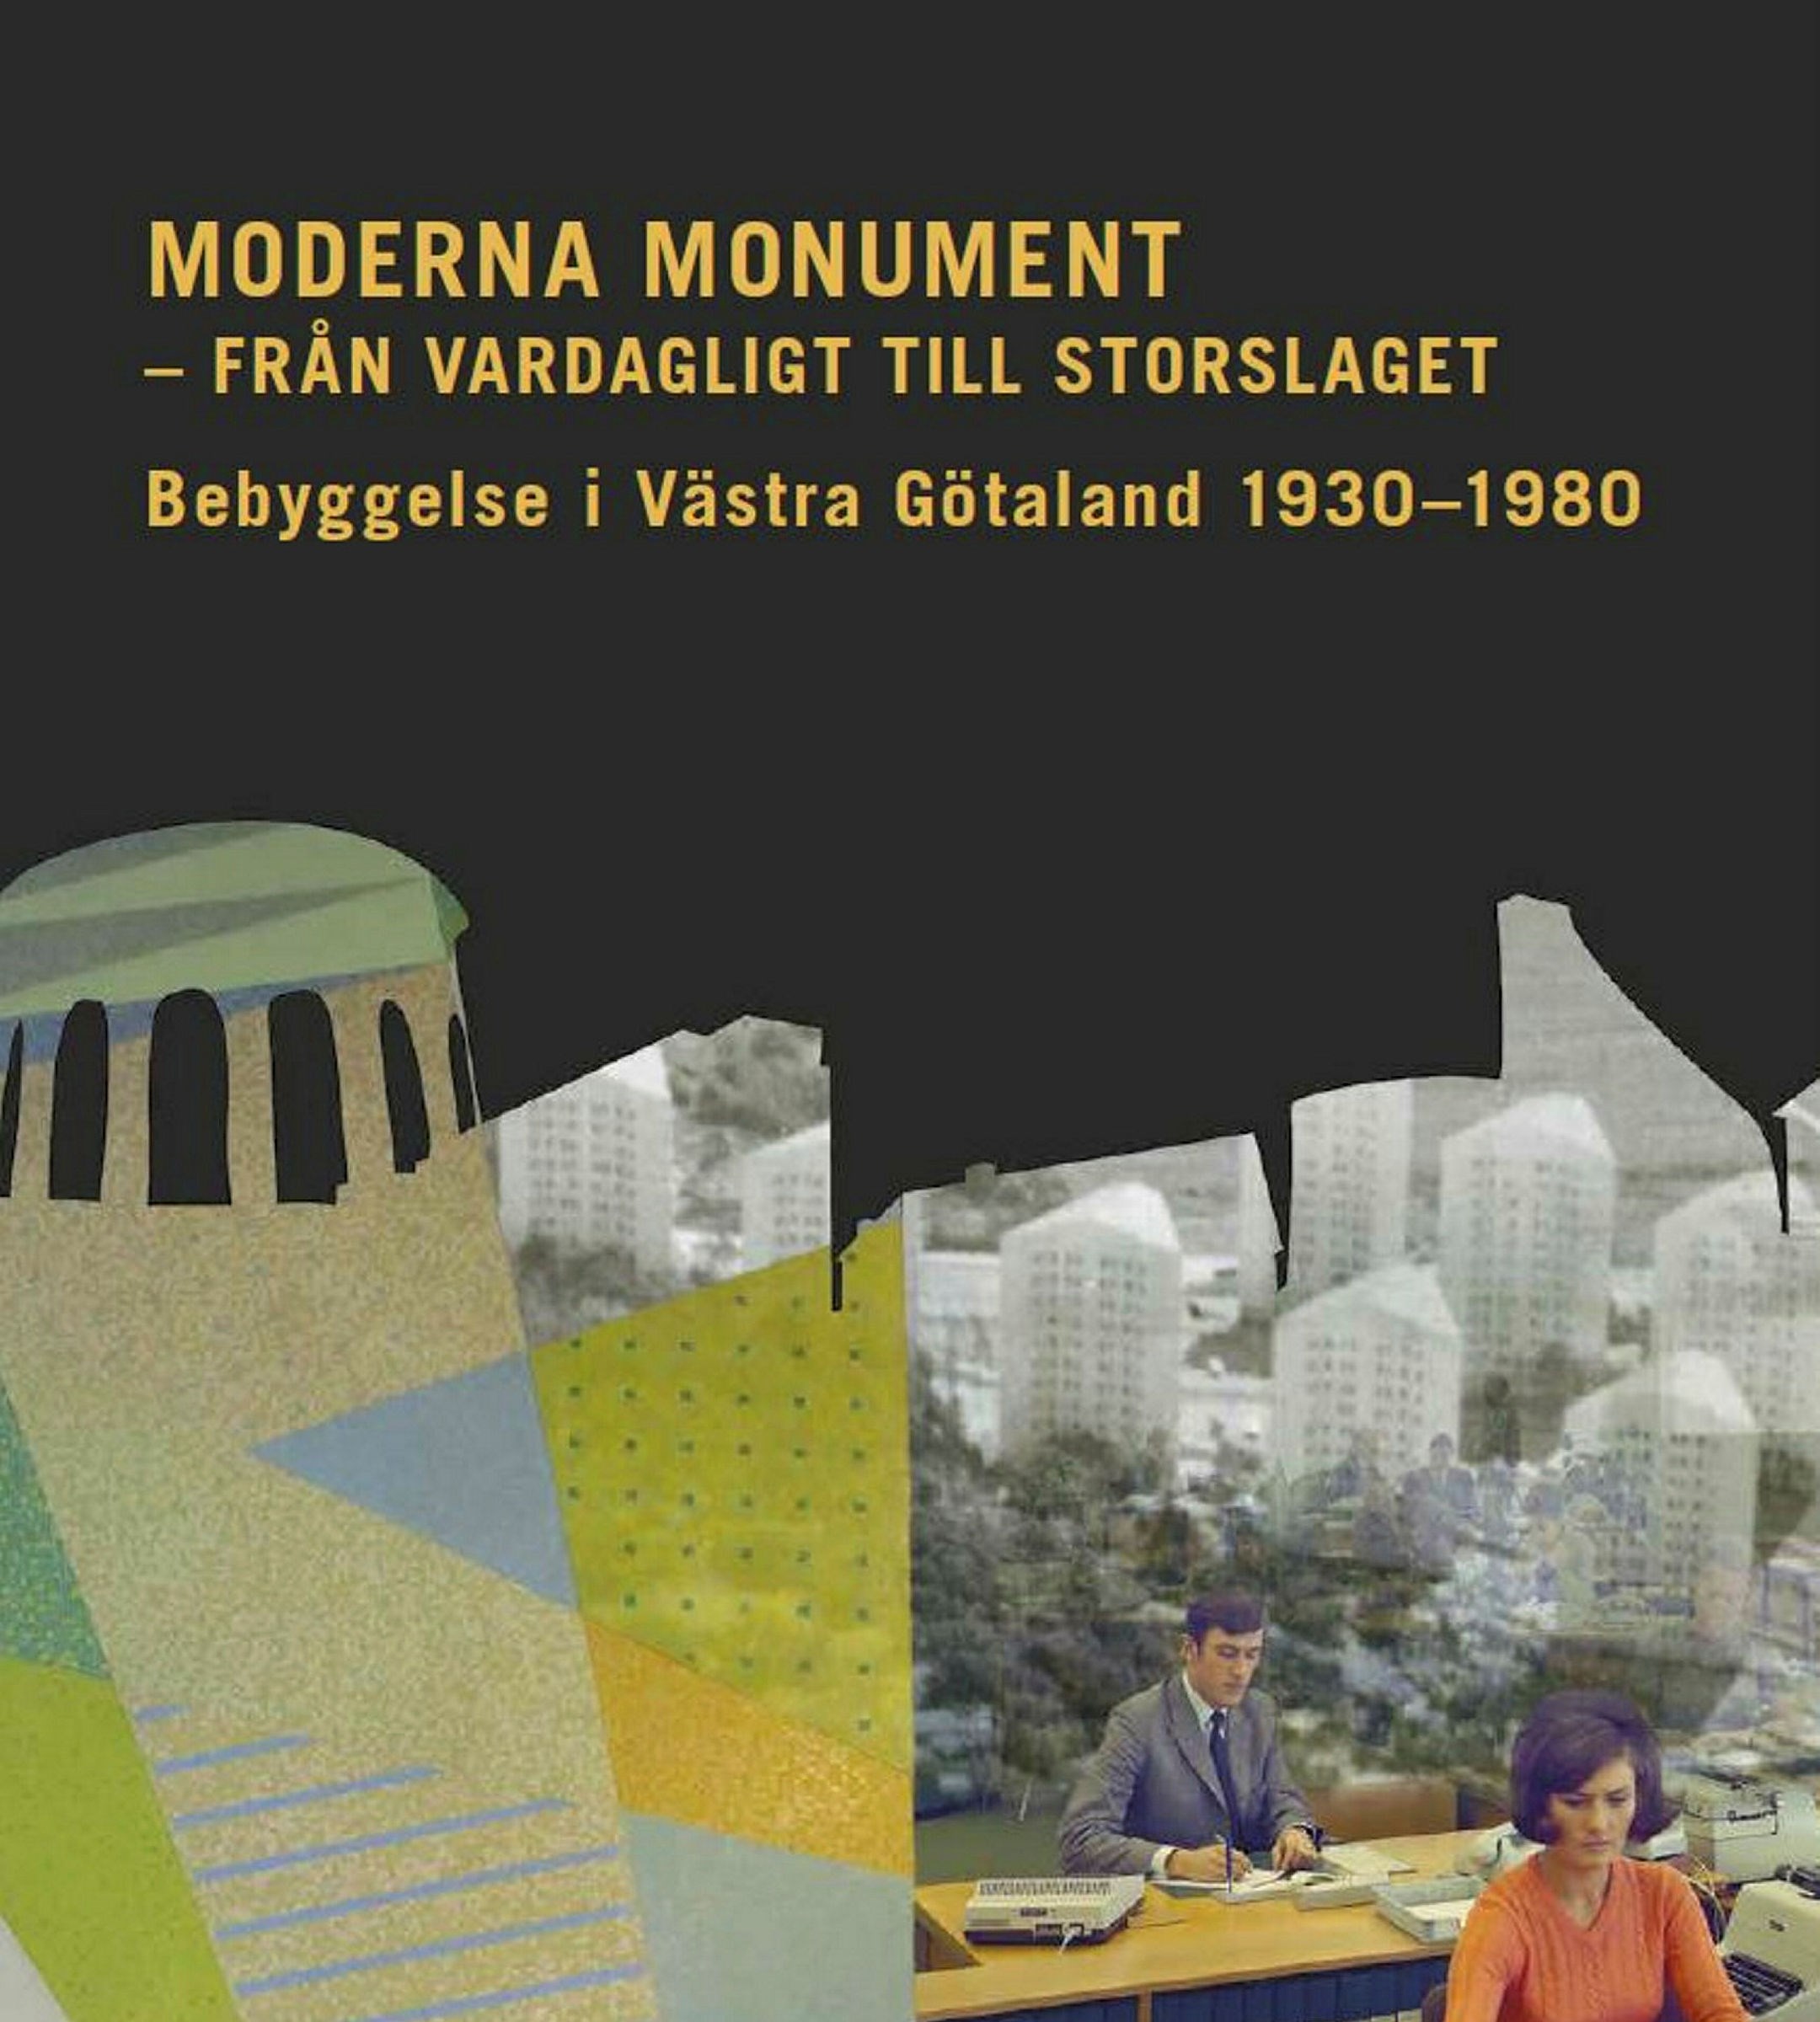 Omslag Moderna monument - från vardagligt till storslaget. Bebyggelse i Västra götaland 1930-1980. Kollage av bebyggelse och två personer som arbetar vid ett bord. 